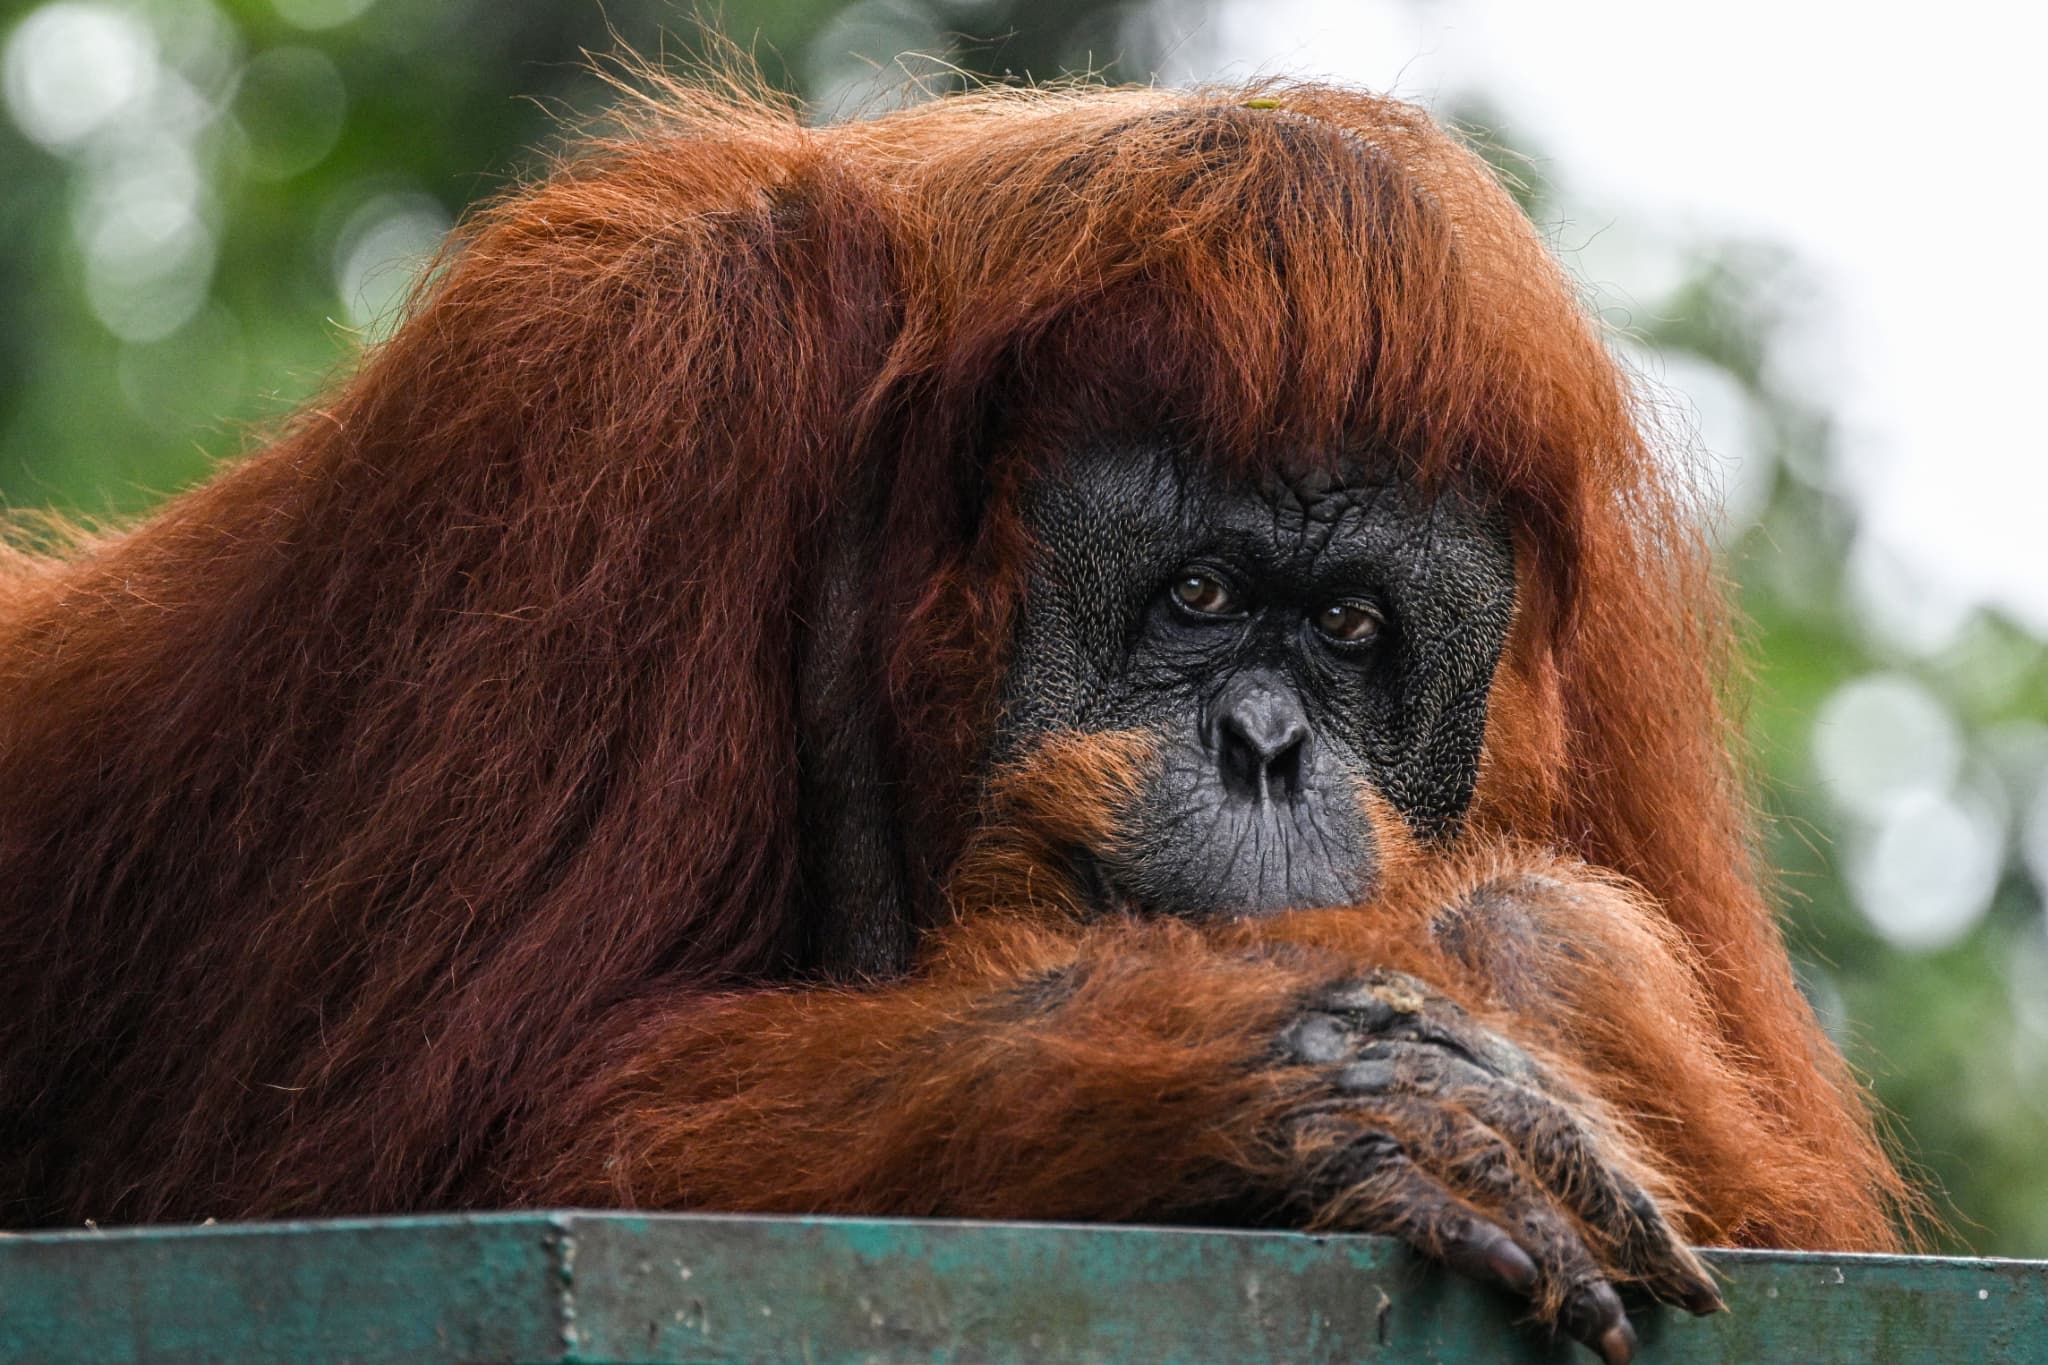 la malaisie souhaite offrir un orang-outan aux pays qui achètent de l'huile de palme